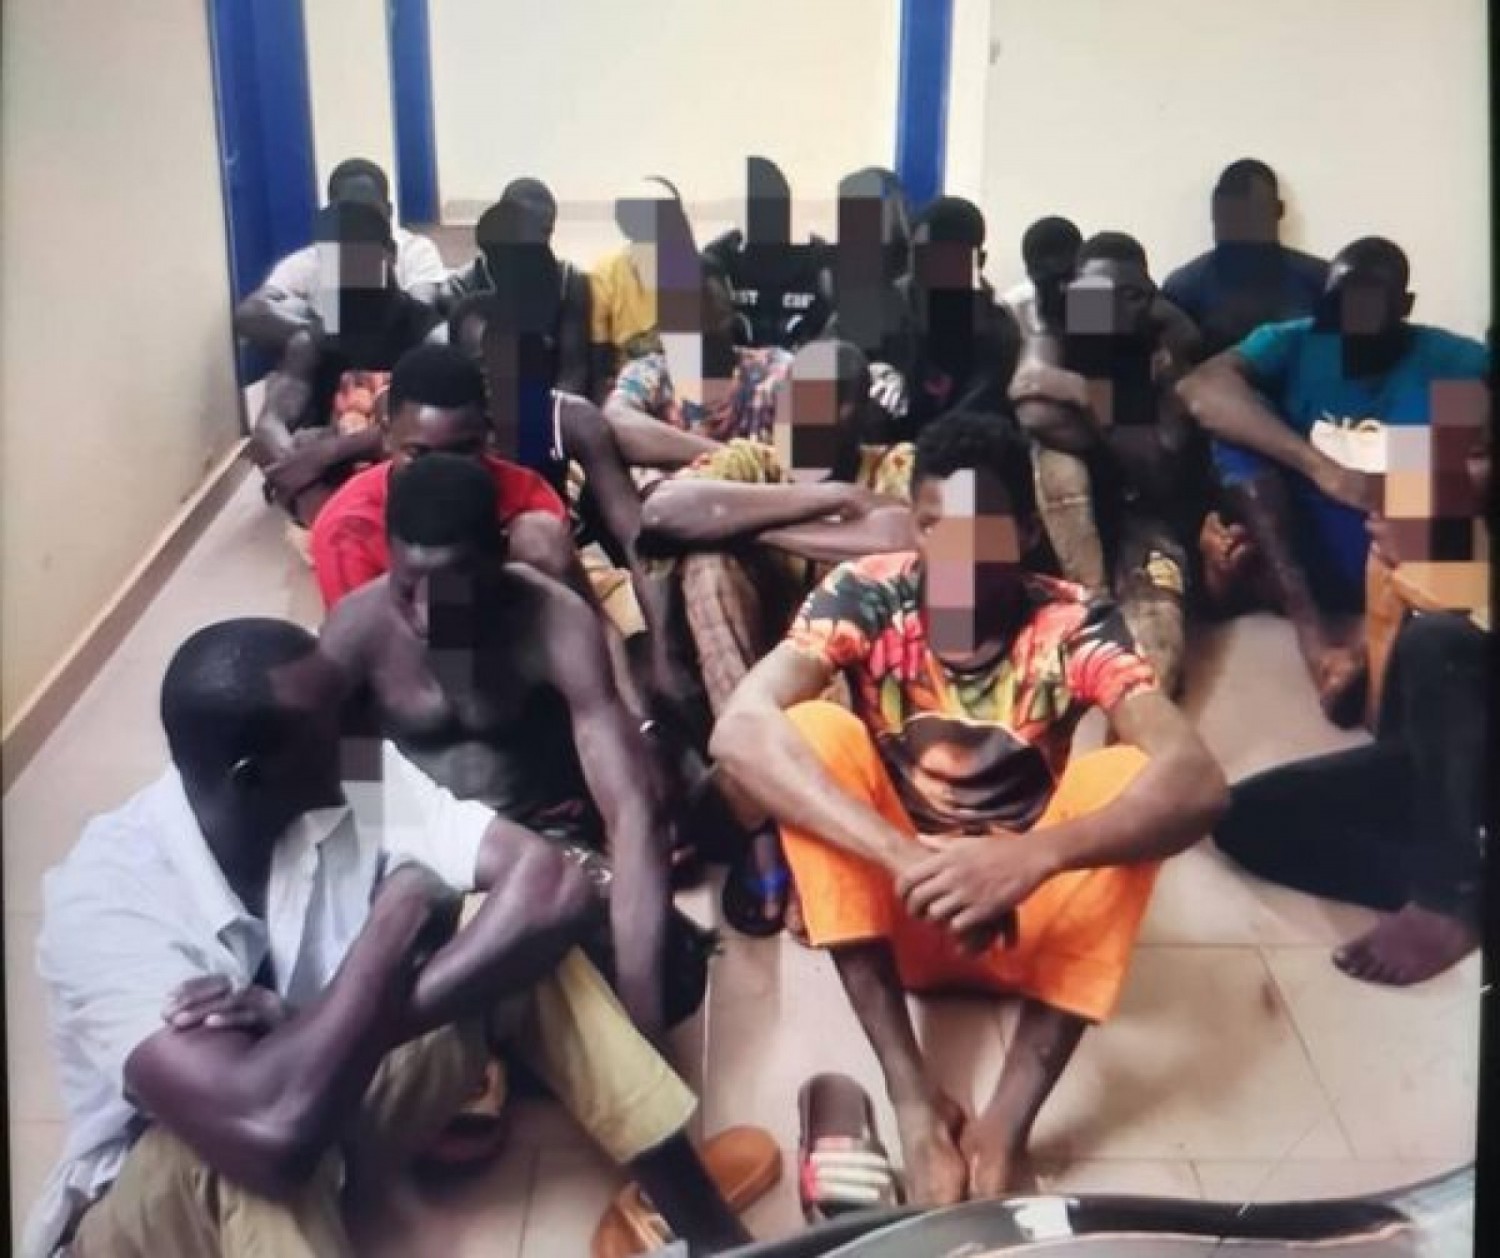 Côte d'Ivoire : Opération de bouclage sur un site d'orpaillage clandestin dans le centre, une vingtaine d'individus interpellés, des armes et munitions saisies